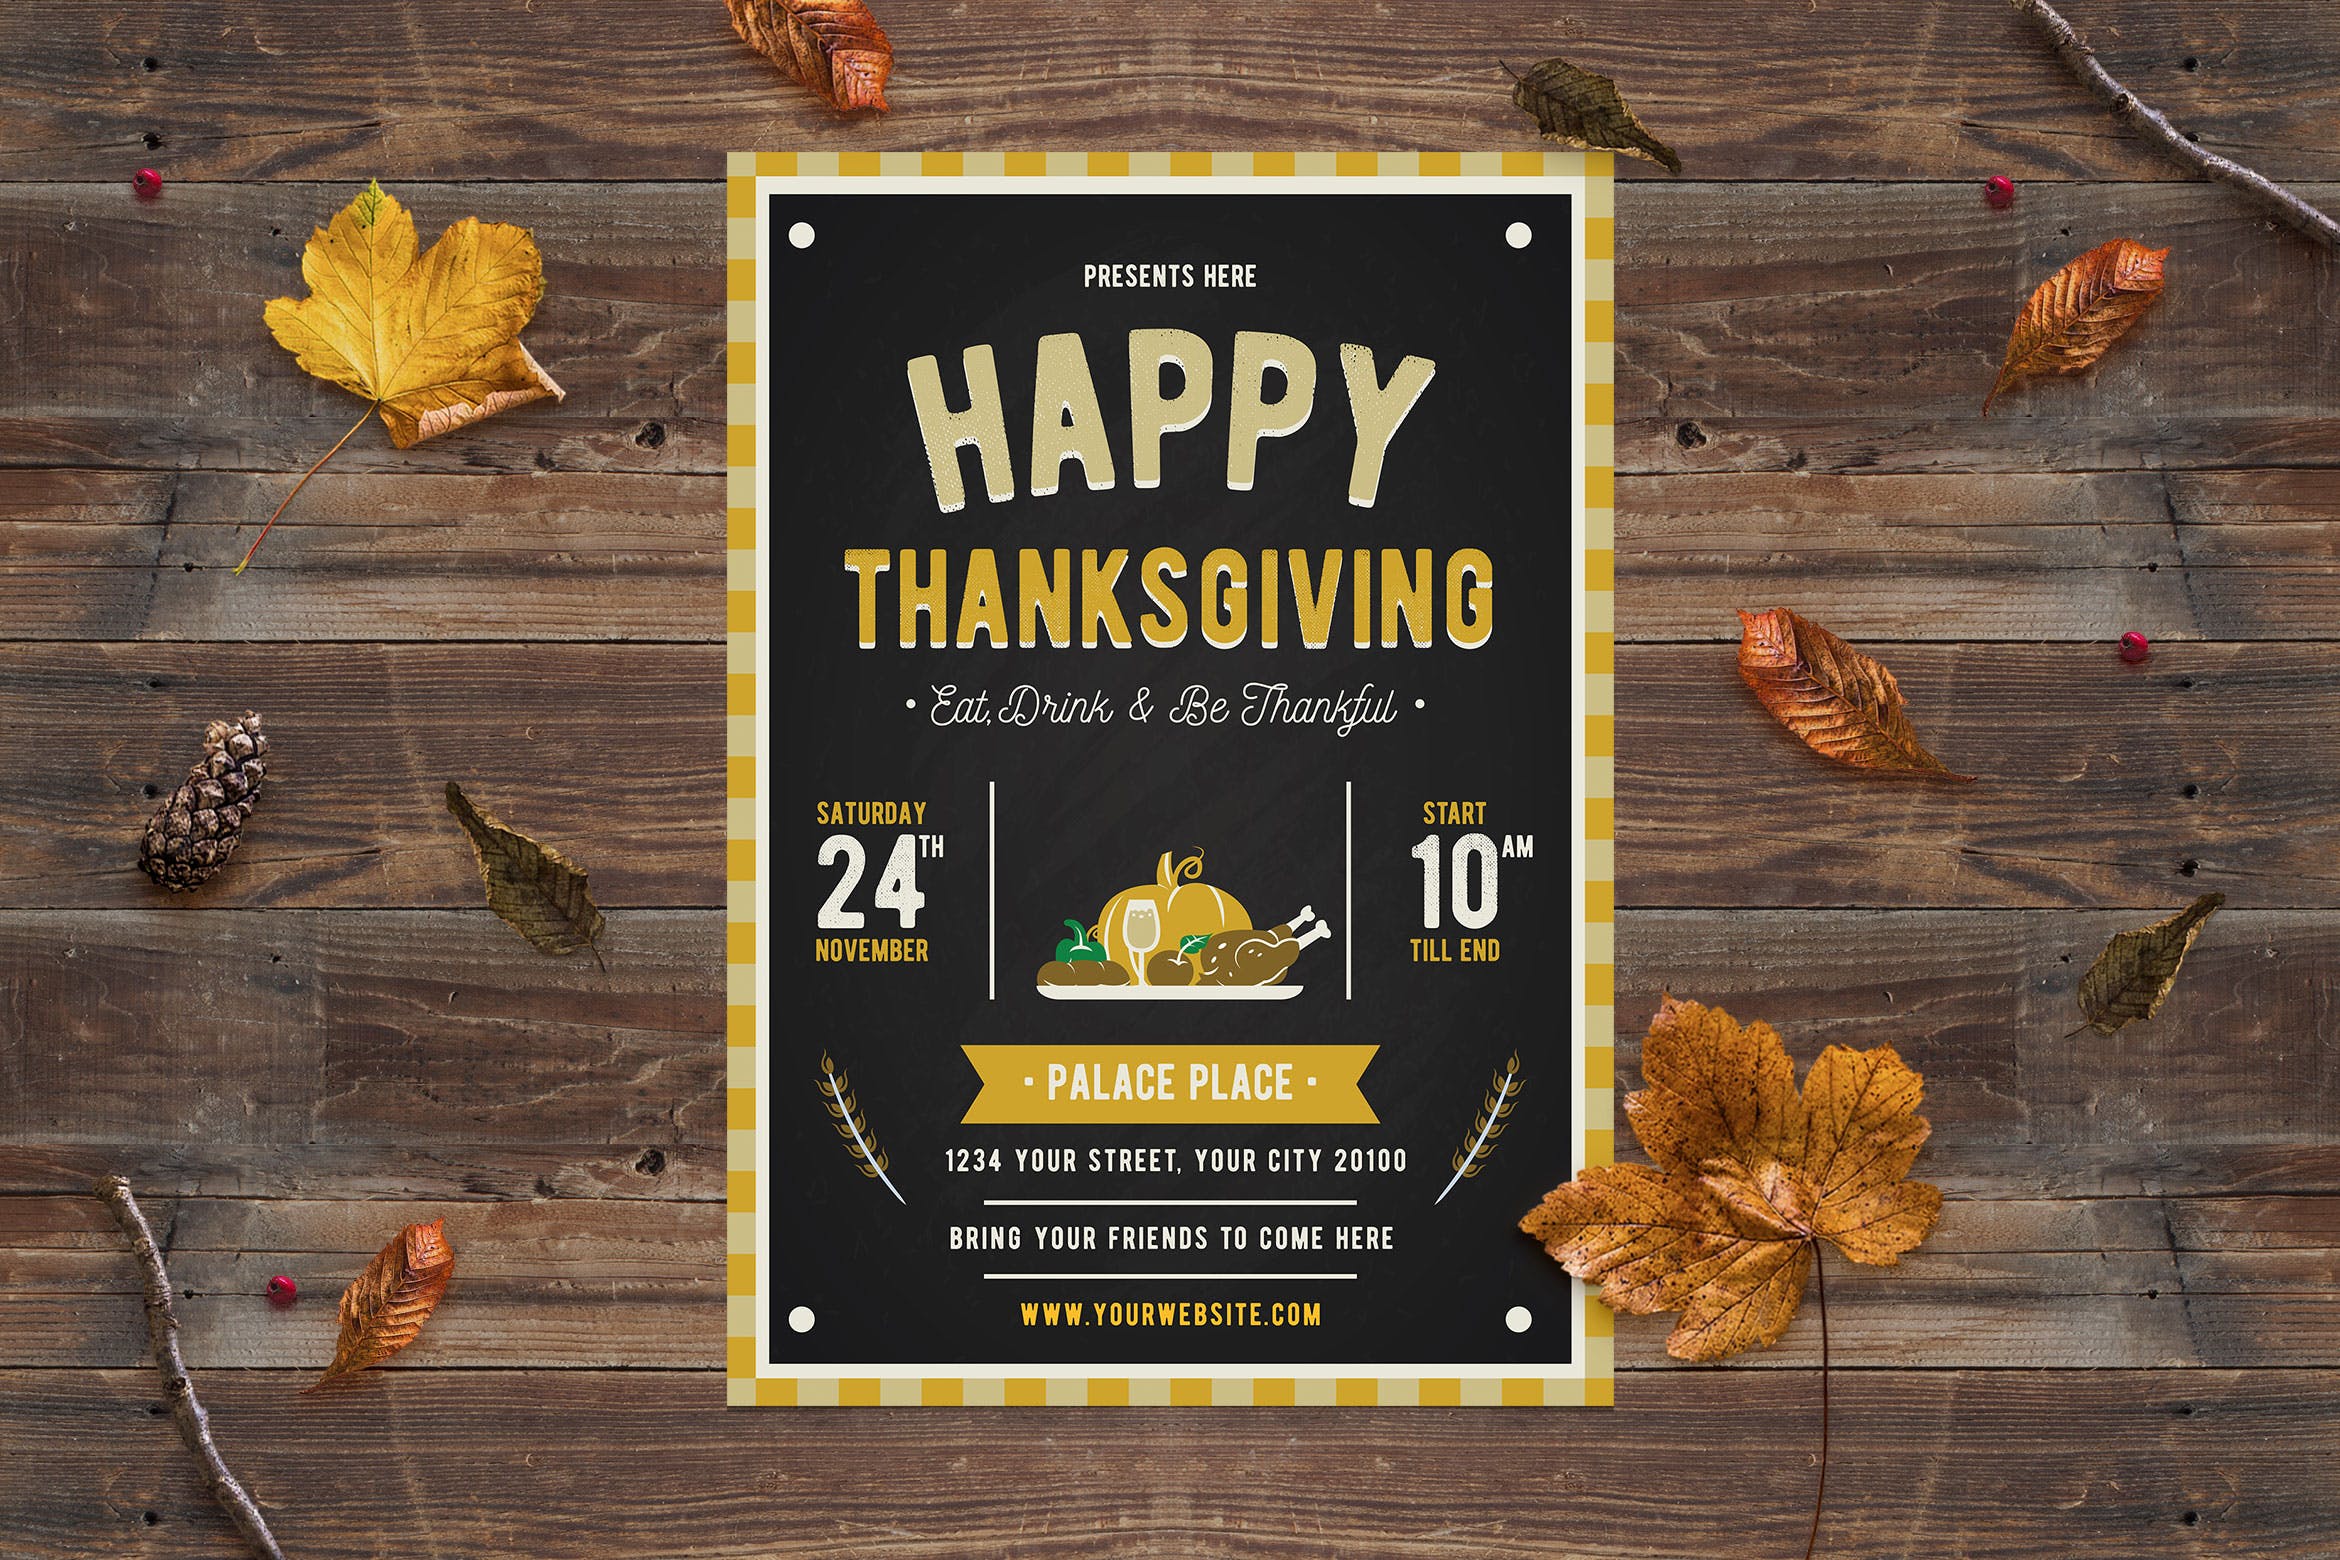 感恩节主题美食活动推广海报传单模板 Happy Thanksgiving Flyer插图